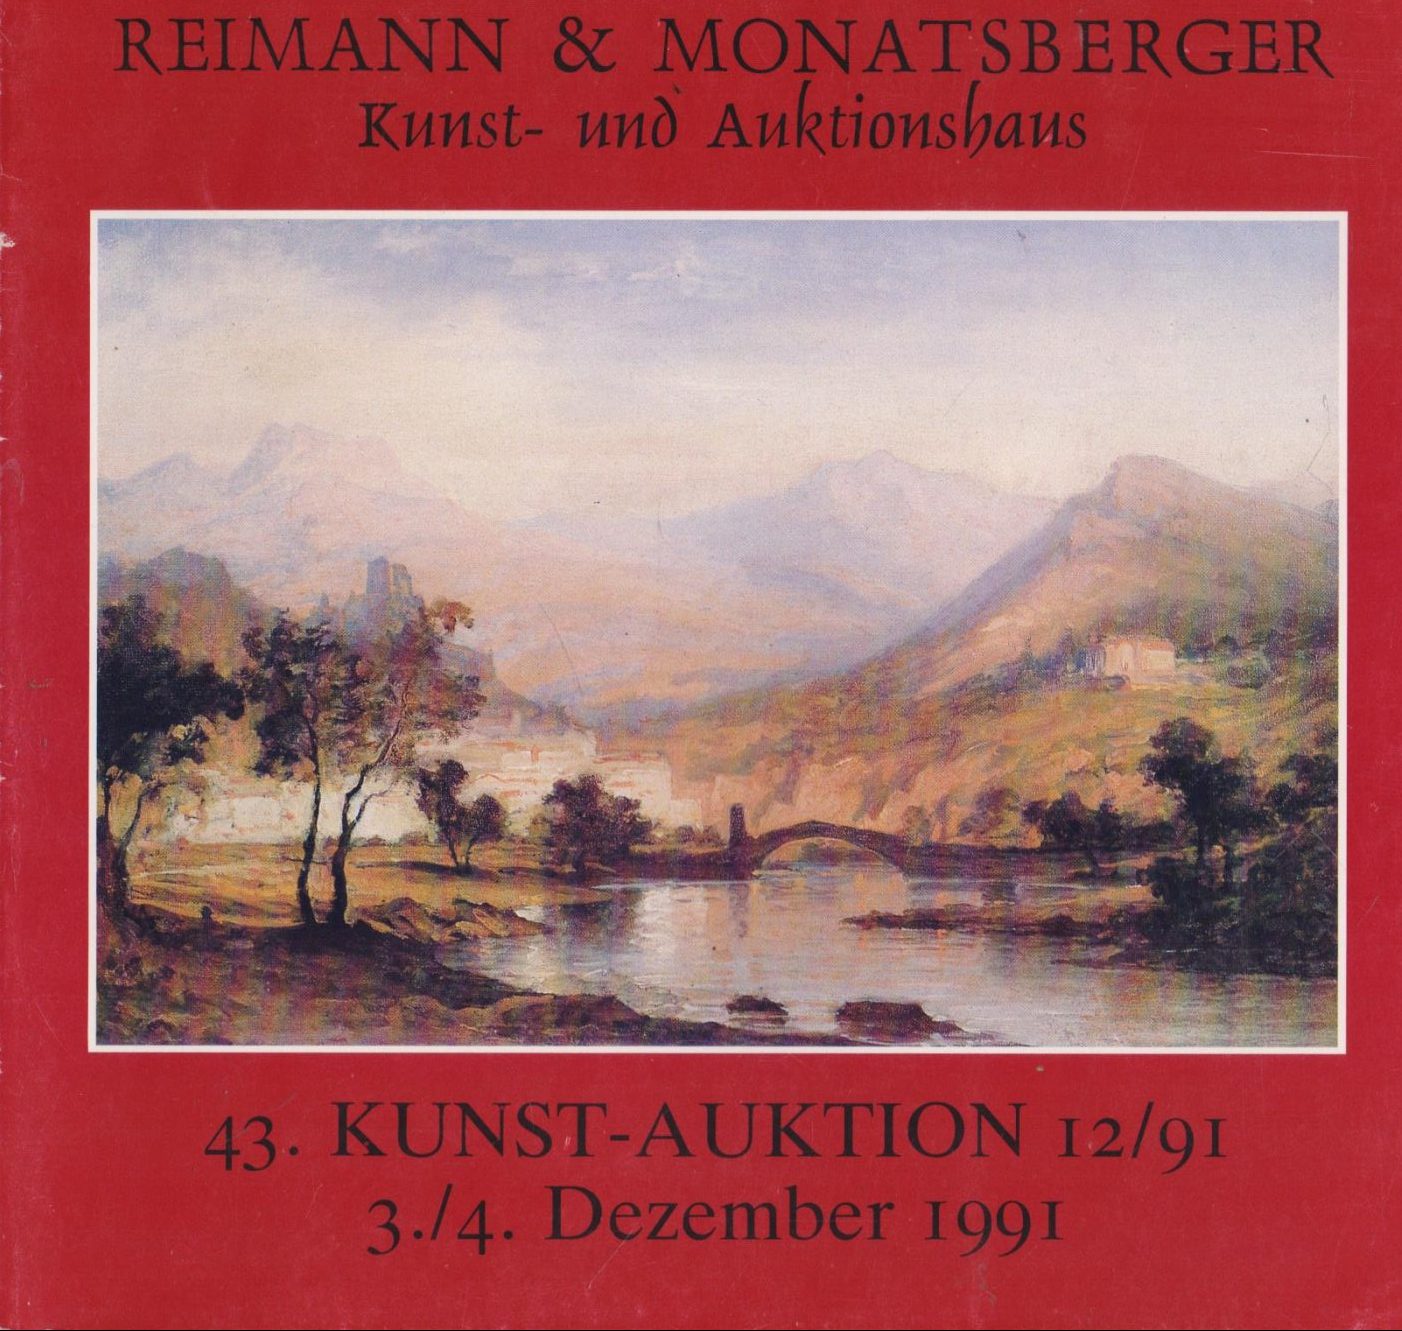 43. Kunst-auktion 12/91 3./4. Dezember 1991. G.A.